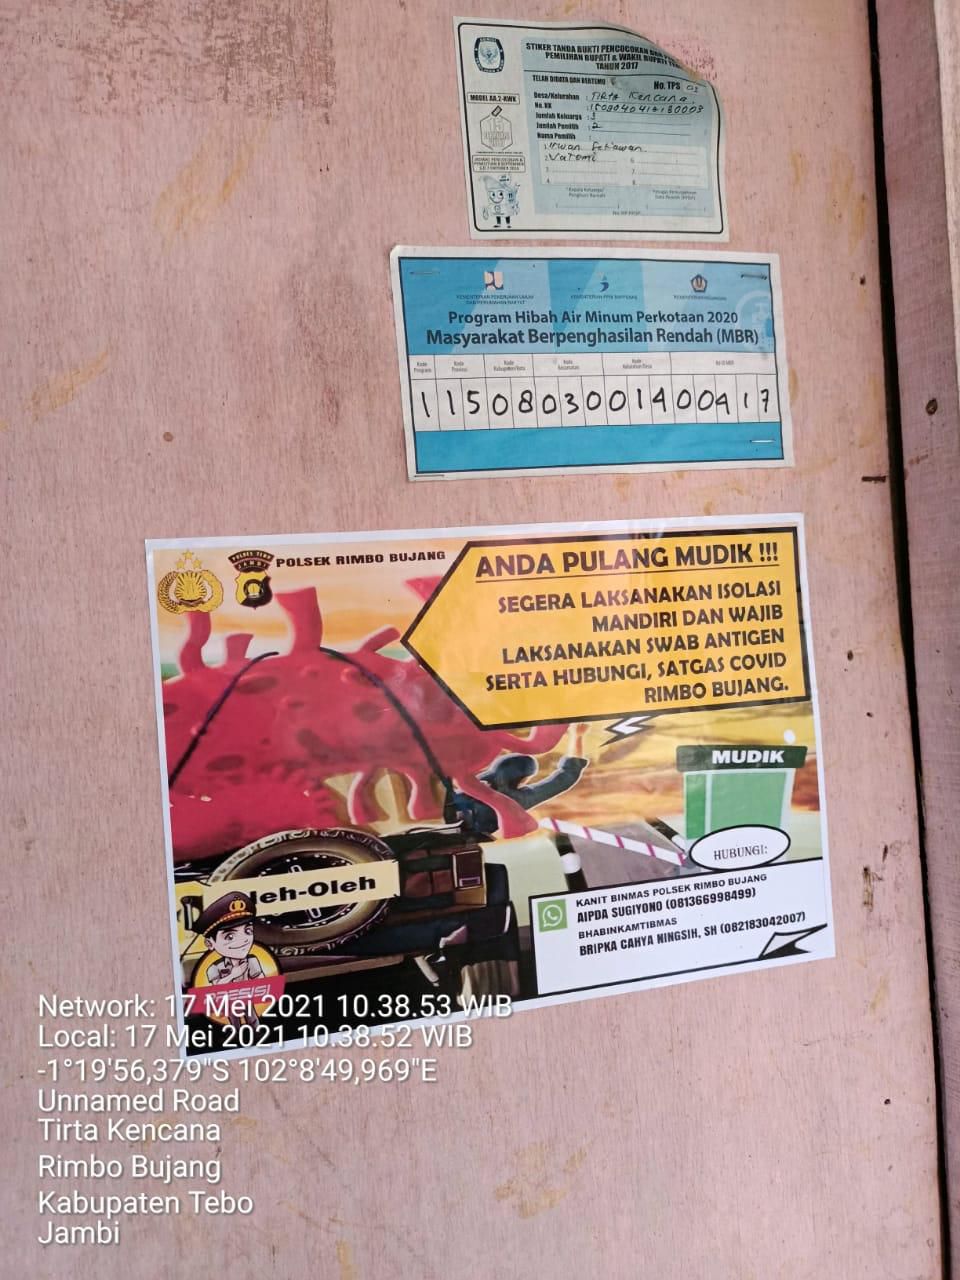 PASANG SITKER: Polsek Rimbo Bujang membuat stiker khusus sebagai tanda bahwa masyarakat harus melaksanakan kewajiban setelah mudik lebaran Idul Fitri 1442 H, di rumah warga.